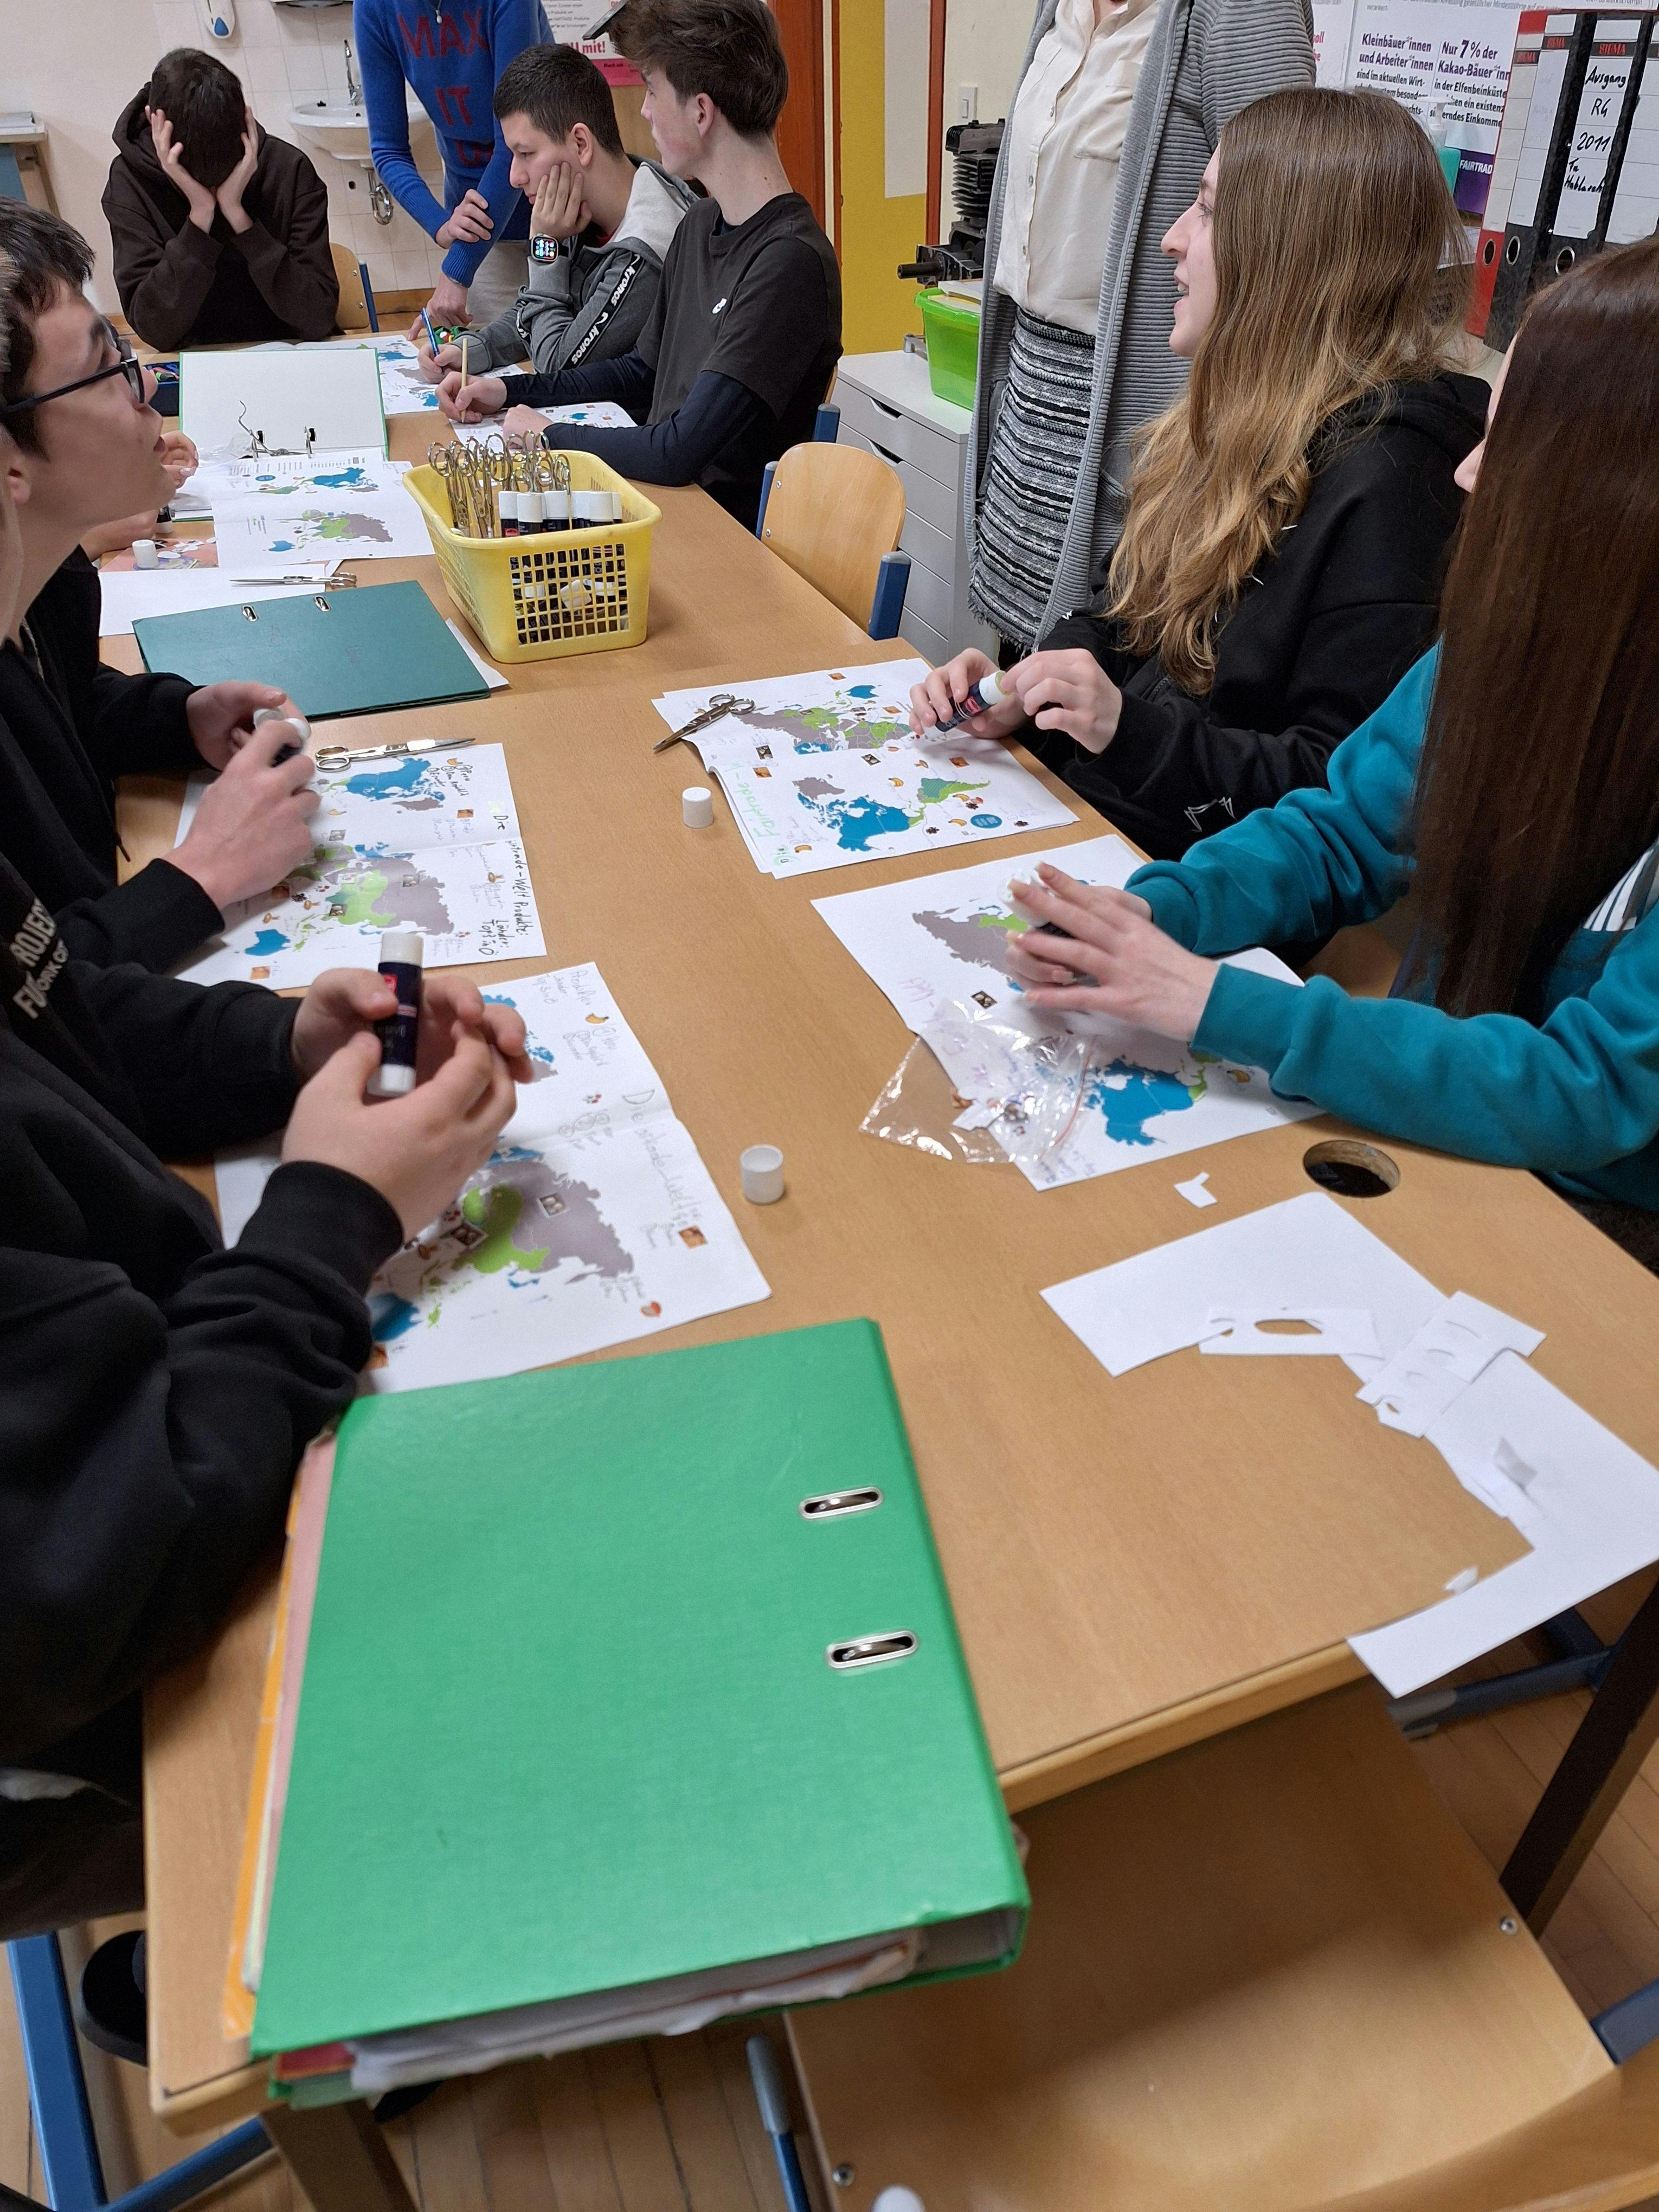 Die Schülerinnen und Schüler erarbeiten und gestalten gemeinsam eine Karte mit den beliebtesten Fairtrade-Produkten in Österreich und deren Herkunftsländer.